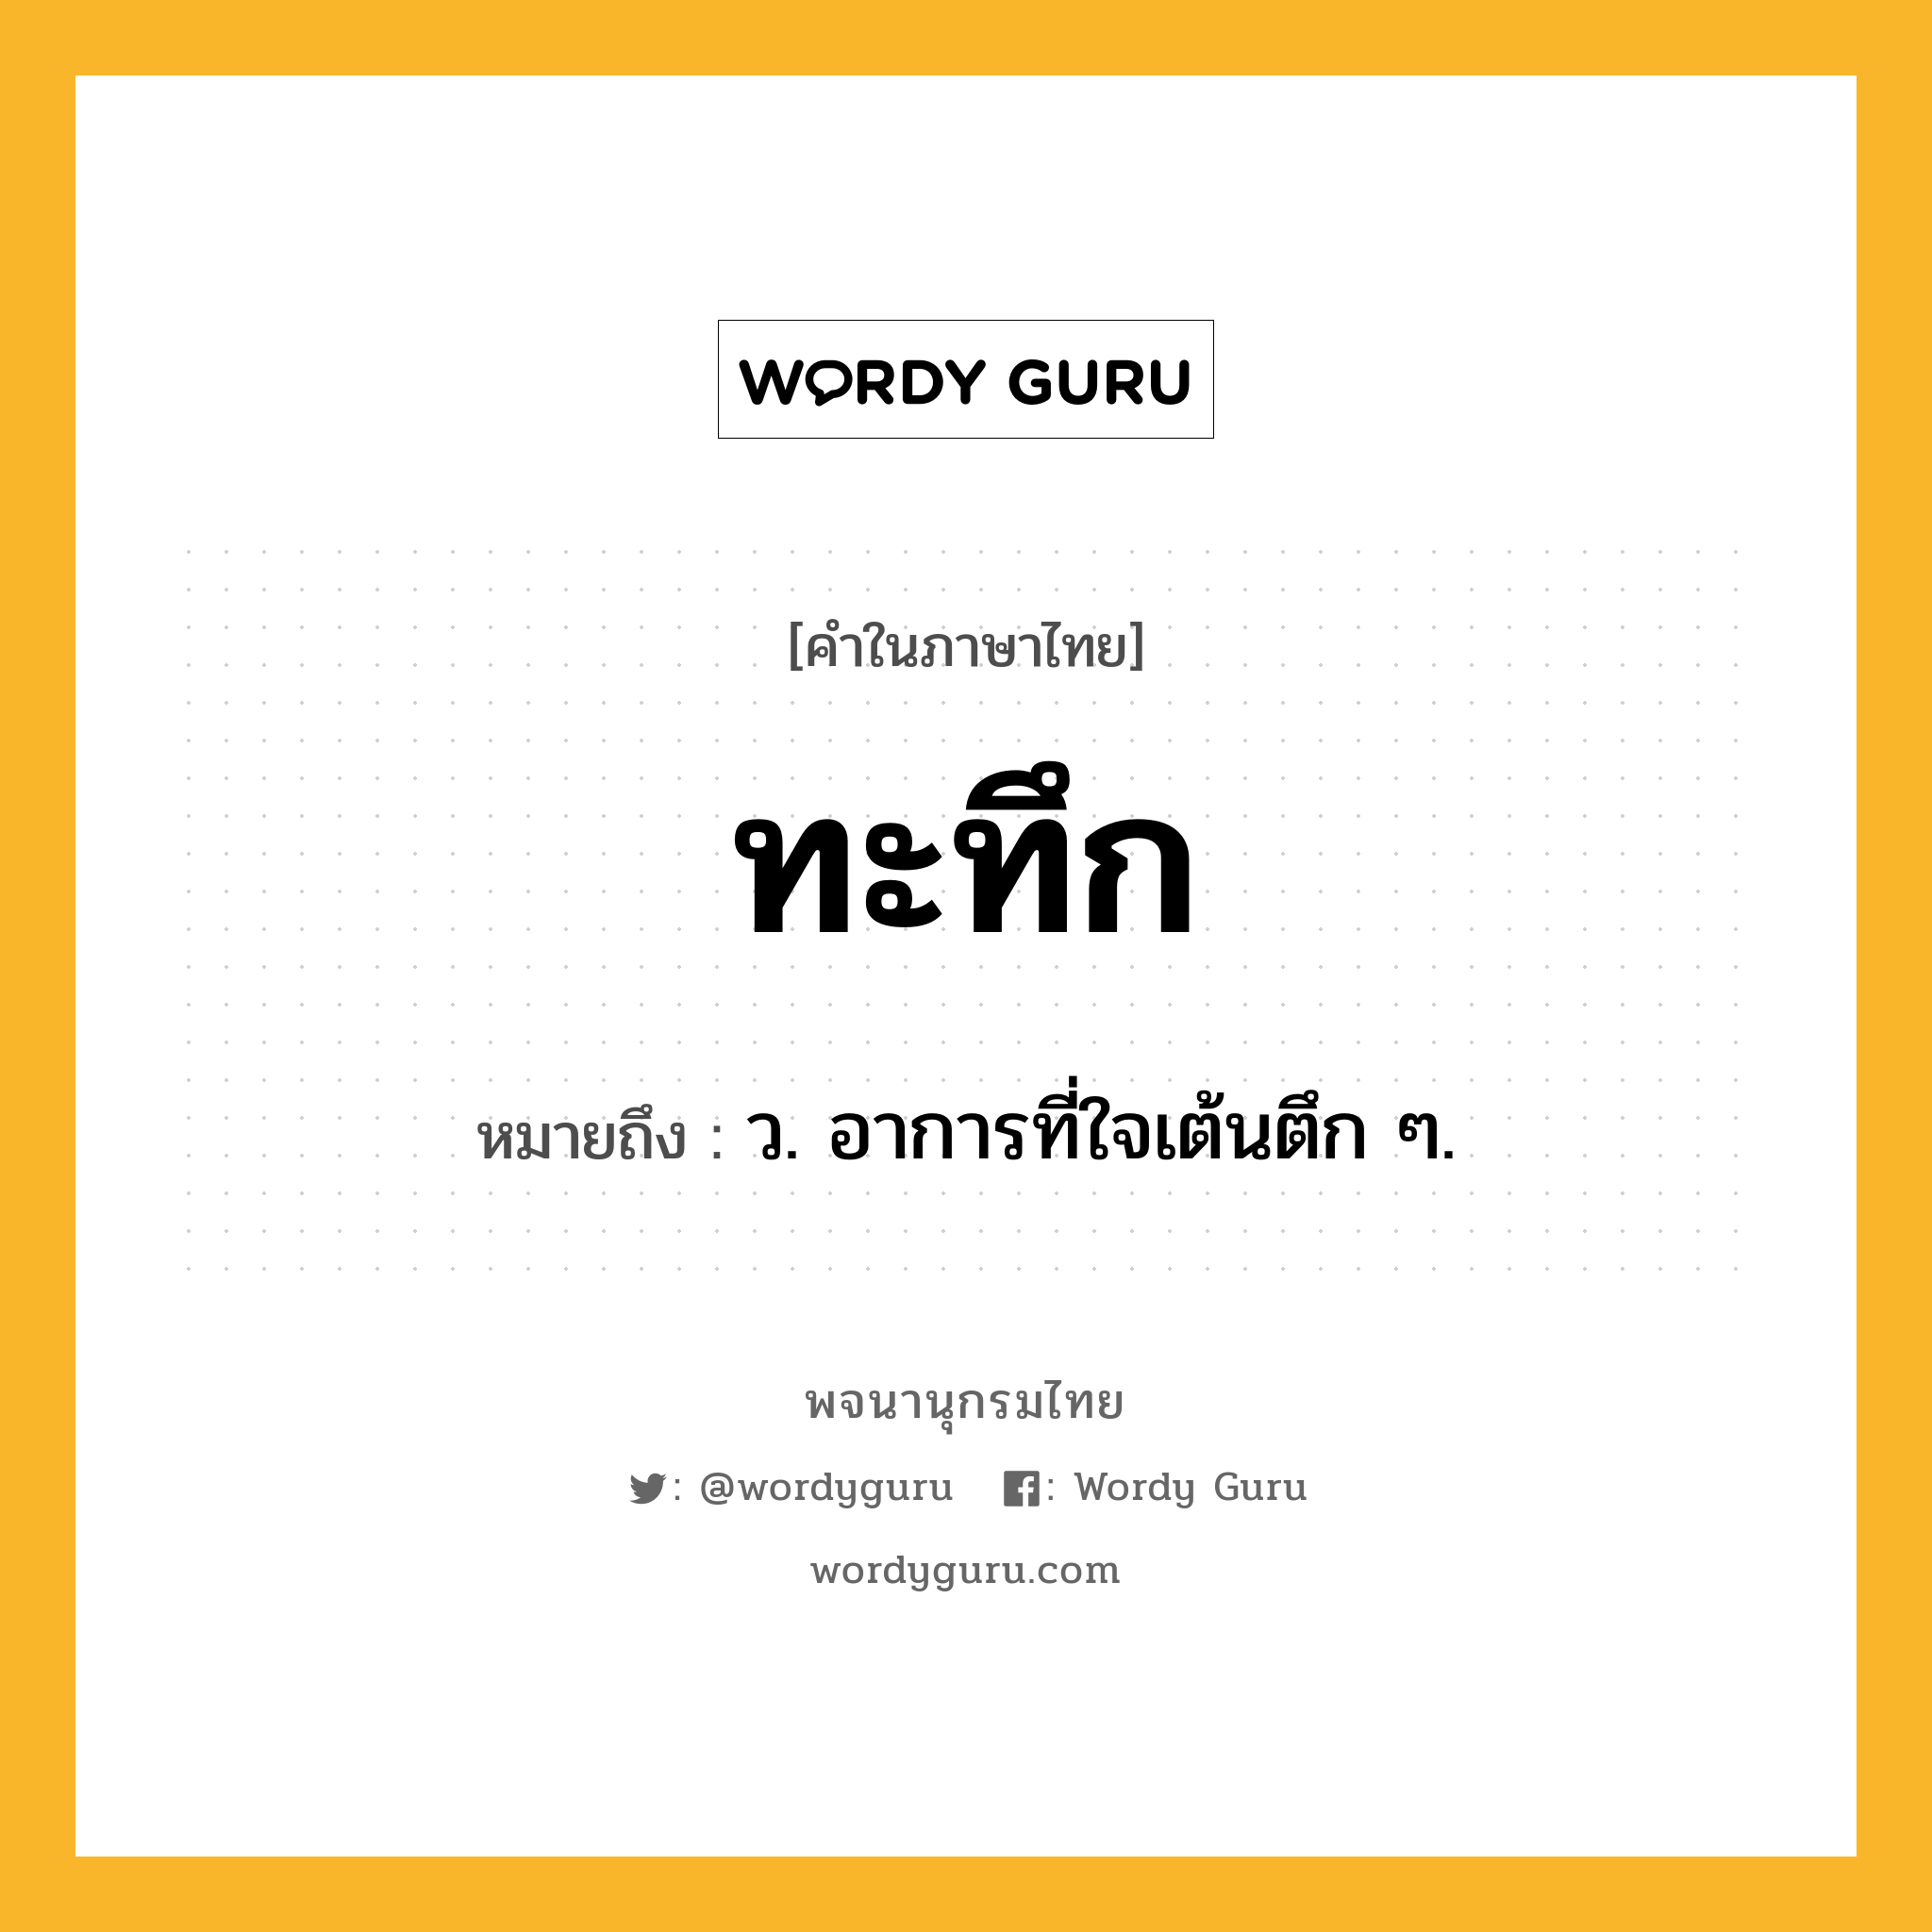 ทะทึก ความหมาย หมายถึงอะไร?, คำในภาษาไทย ทะทึก หมายถึง ว. อาการที่ใจเต้นตึก ๆ.